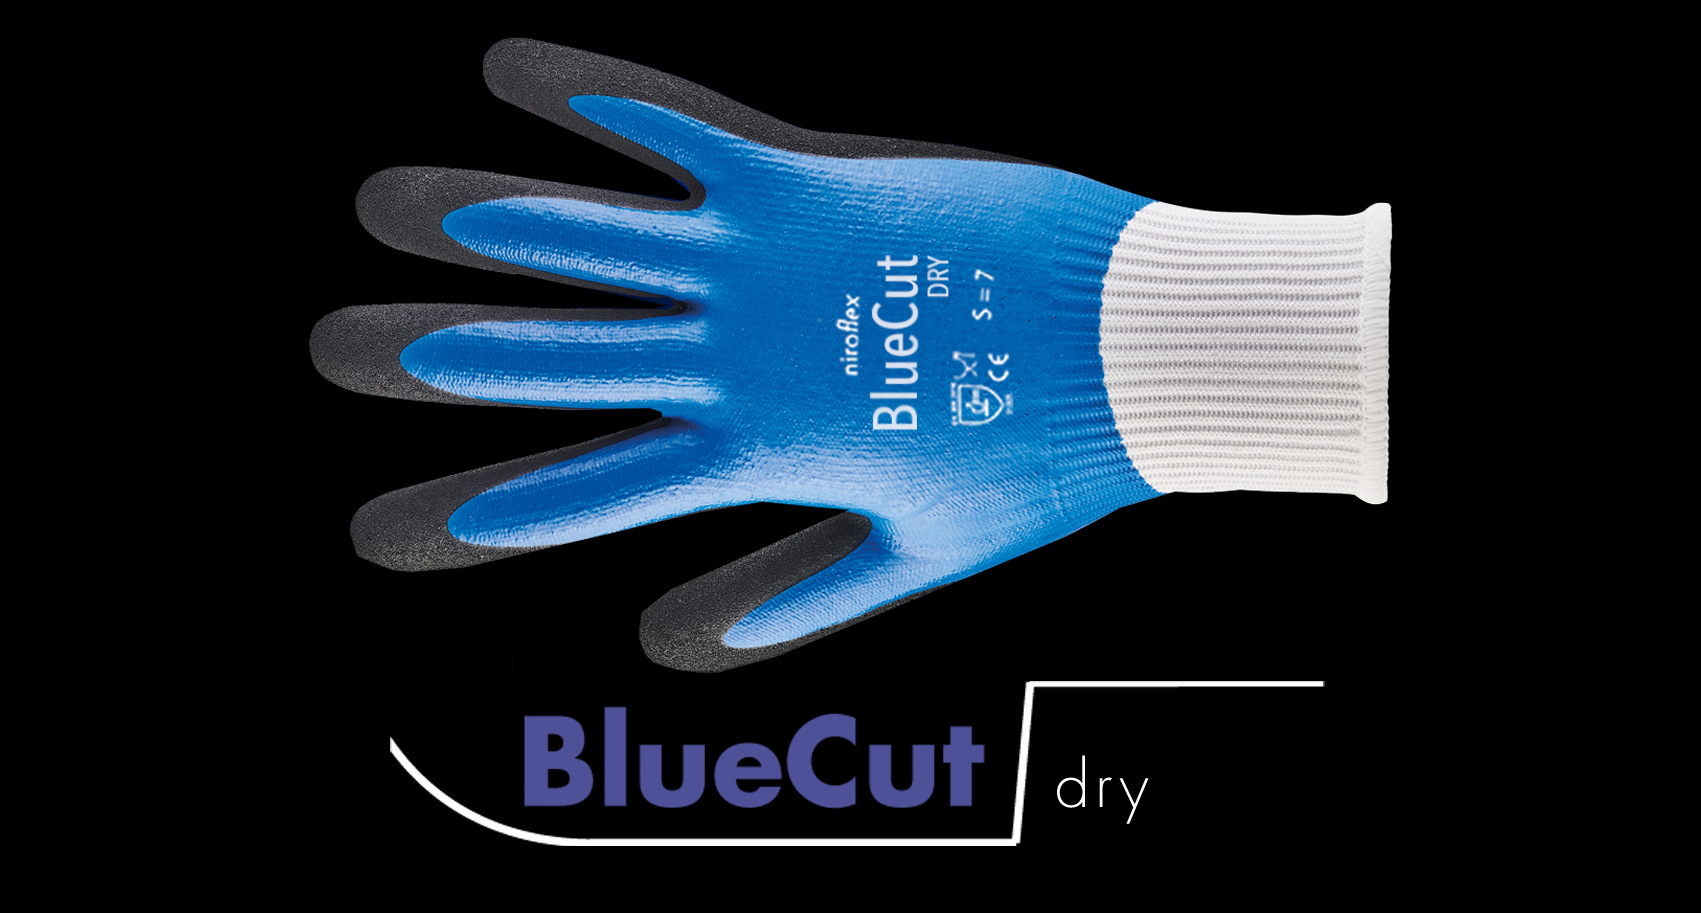 BlueCut dry / pro / armguard / lite / lite x